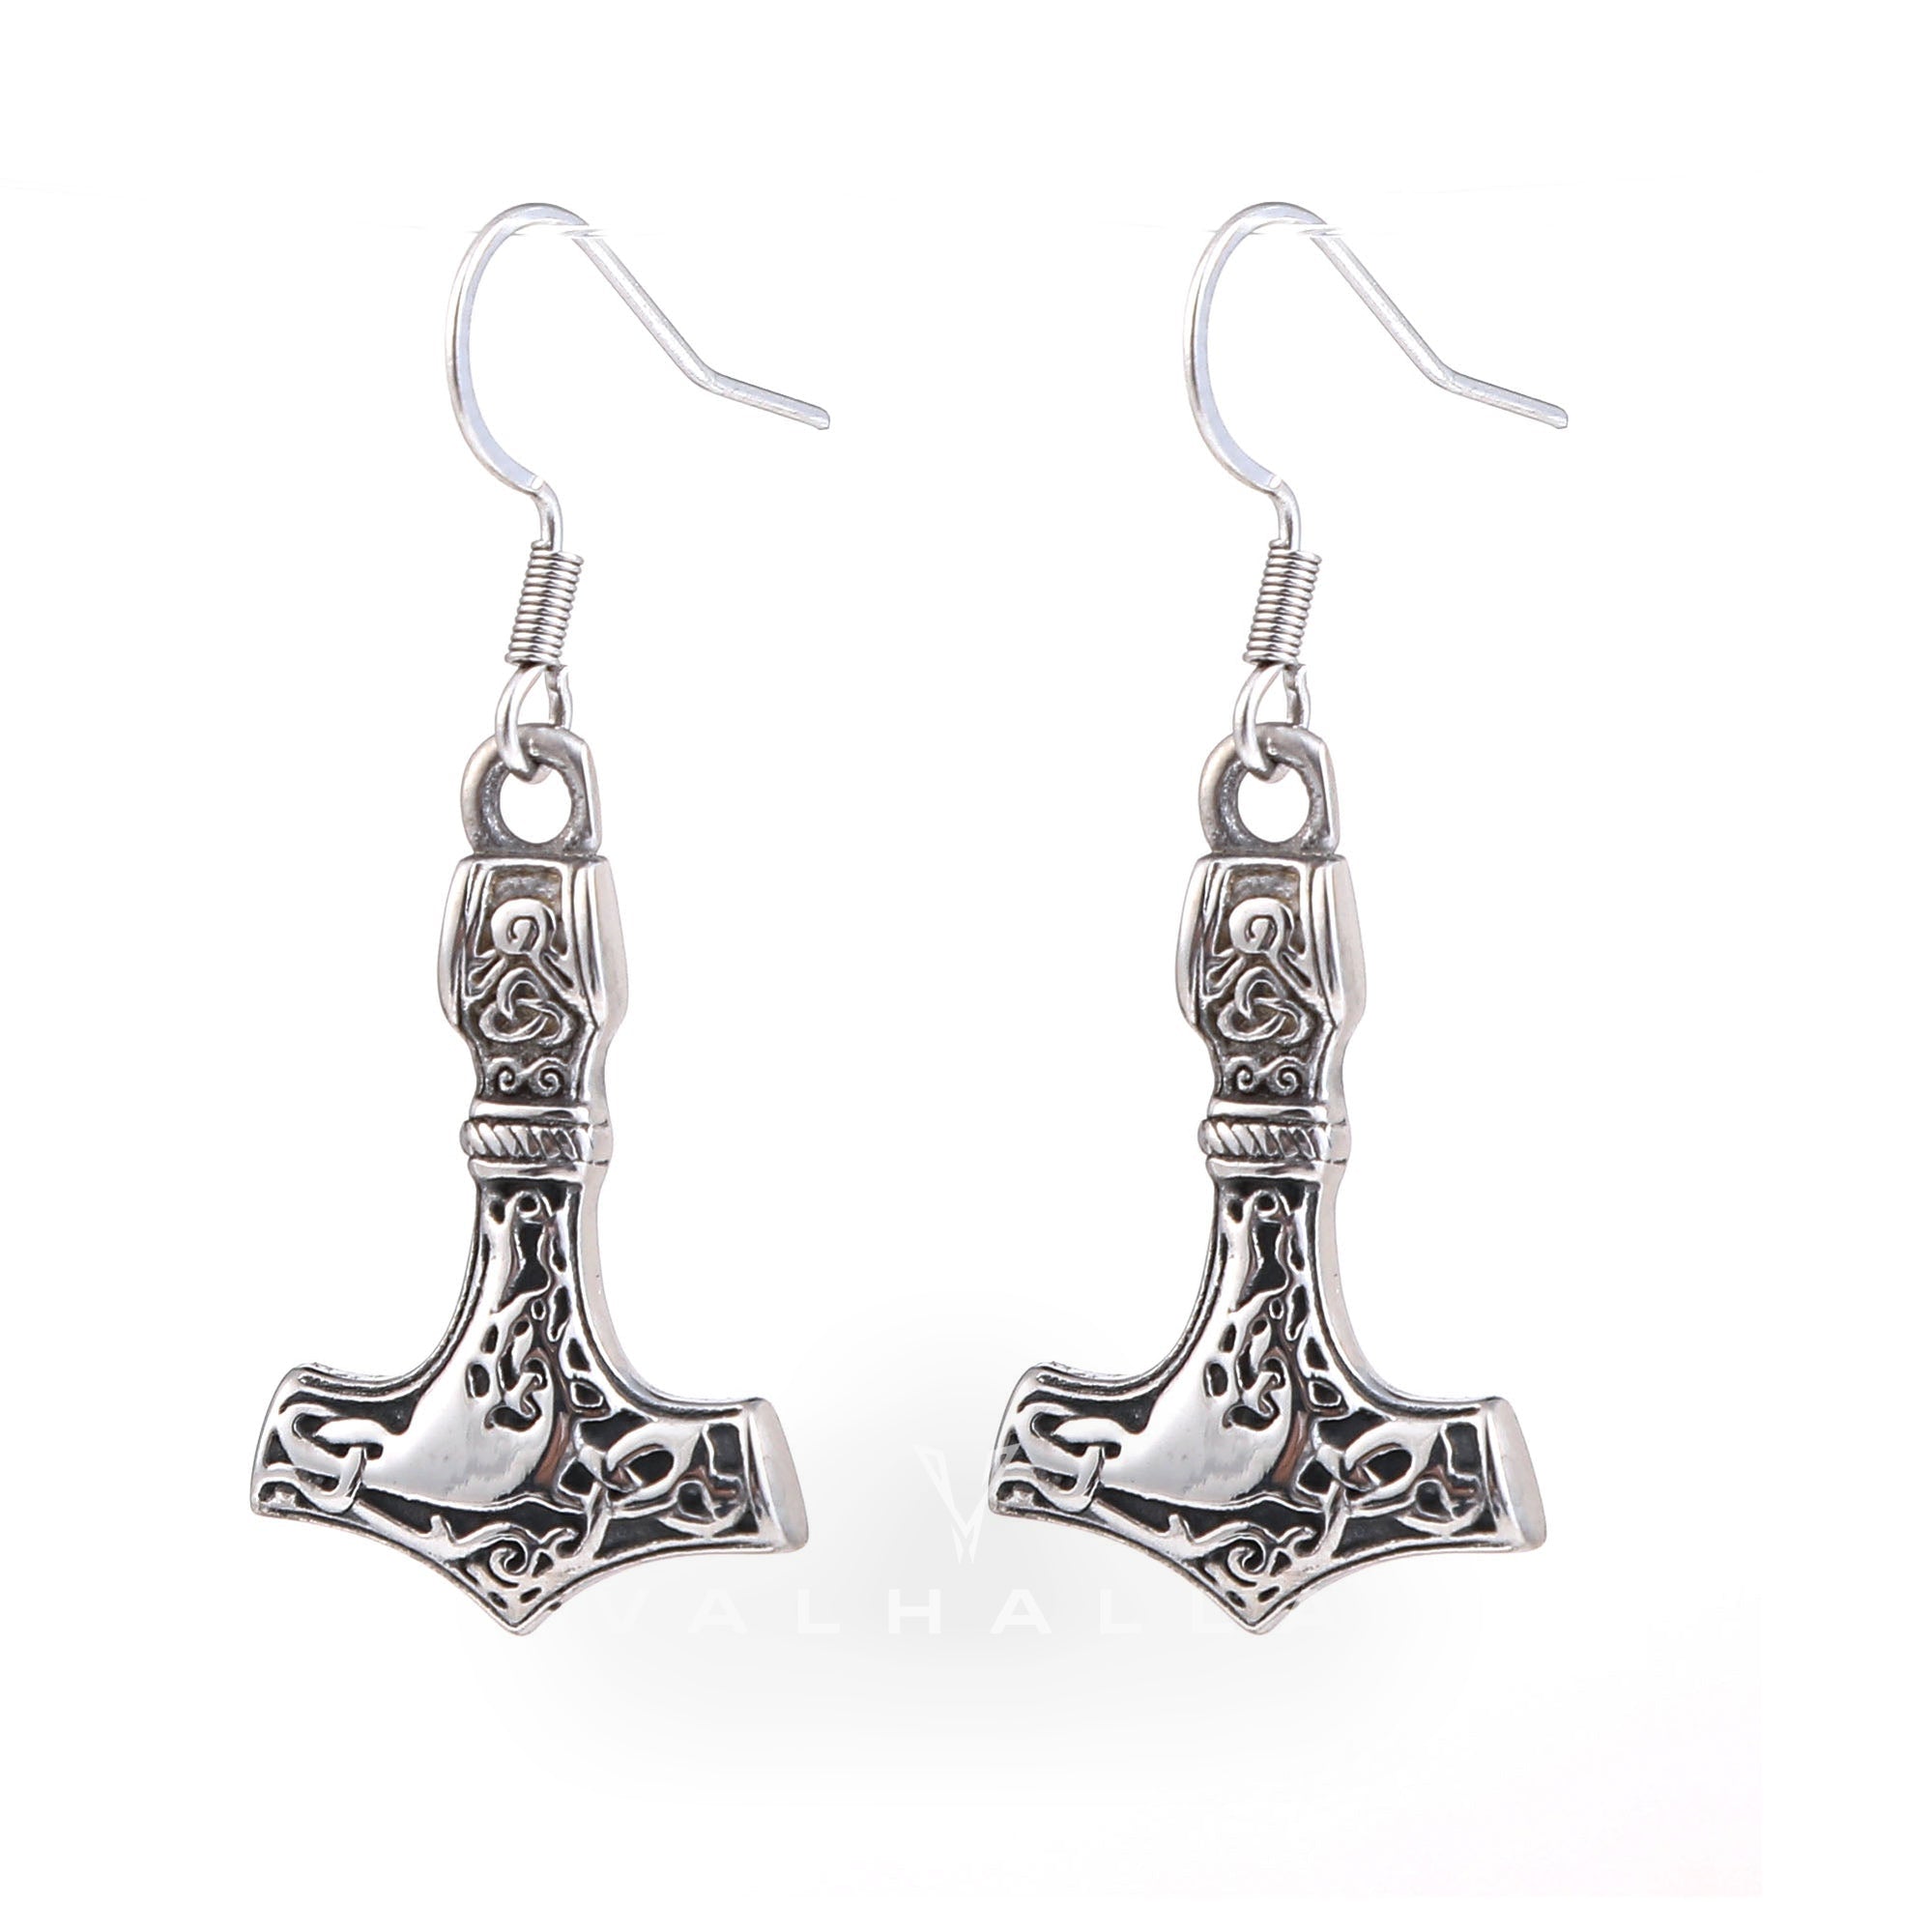 Odin Mjolnir Stainless Steel Viking Earrings